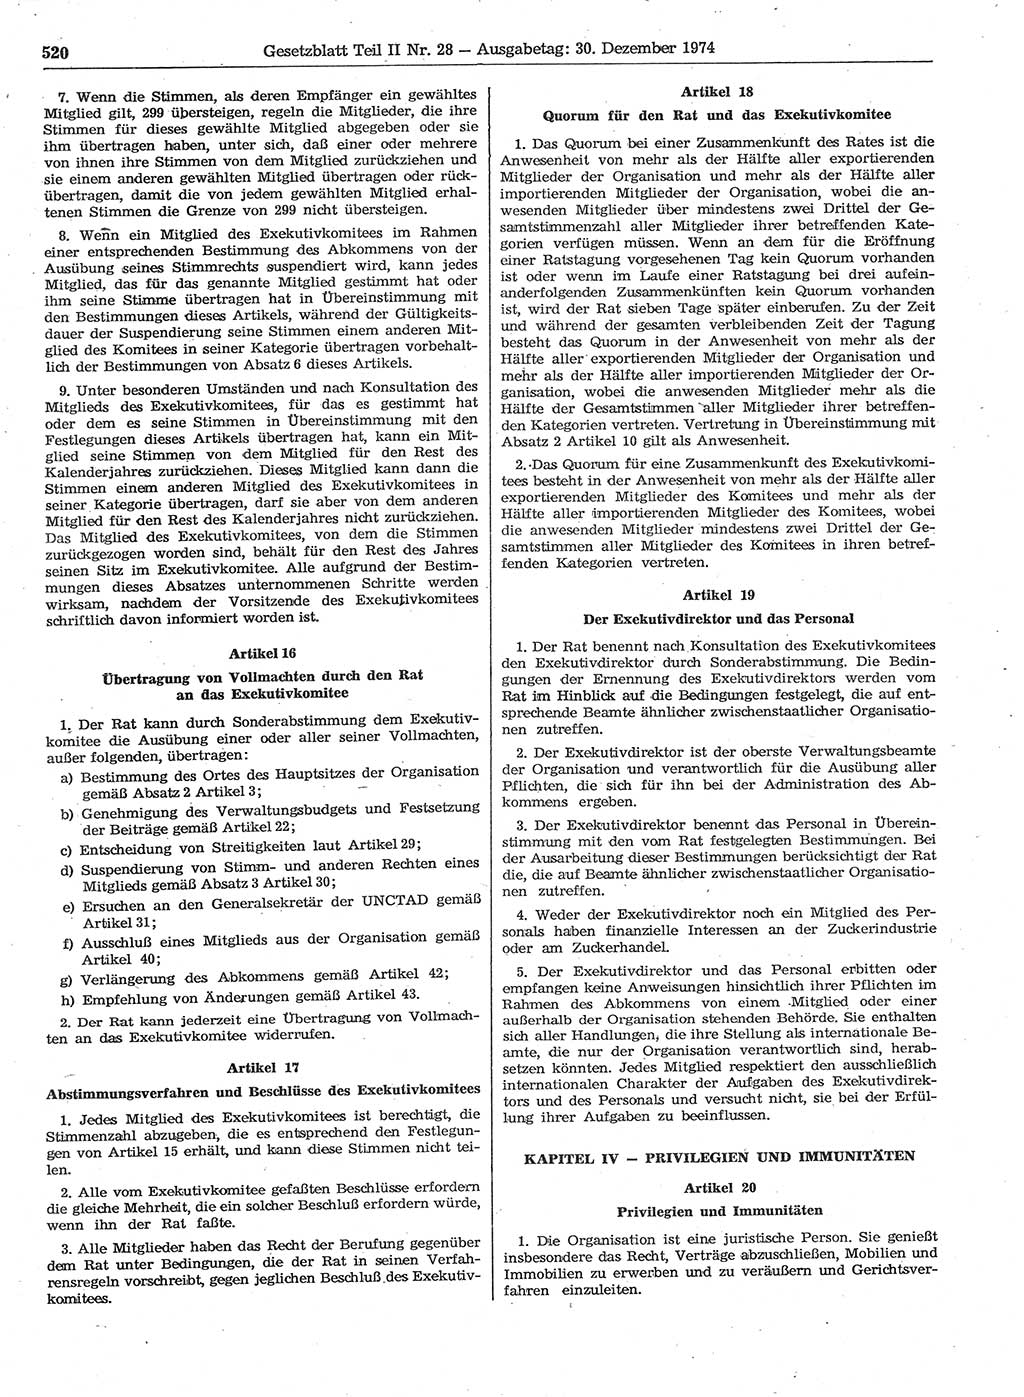 Gesetzblatt (GBl.) der Deutschen Demokratischen Republik (DDR) Teil ⅠⅠ 1974, Seite 520 (GBl. DDR ⅠⅠ 1974, S. 520)